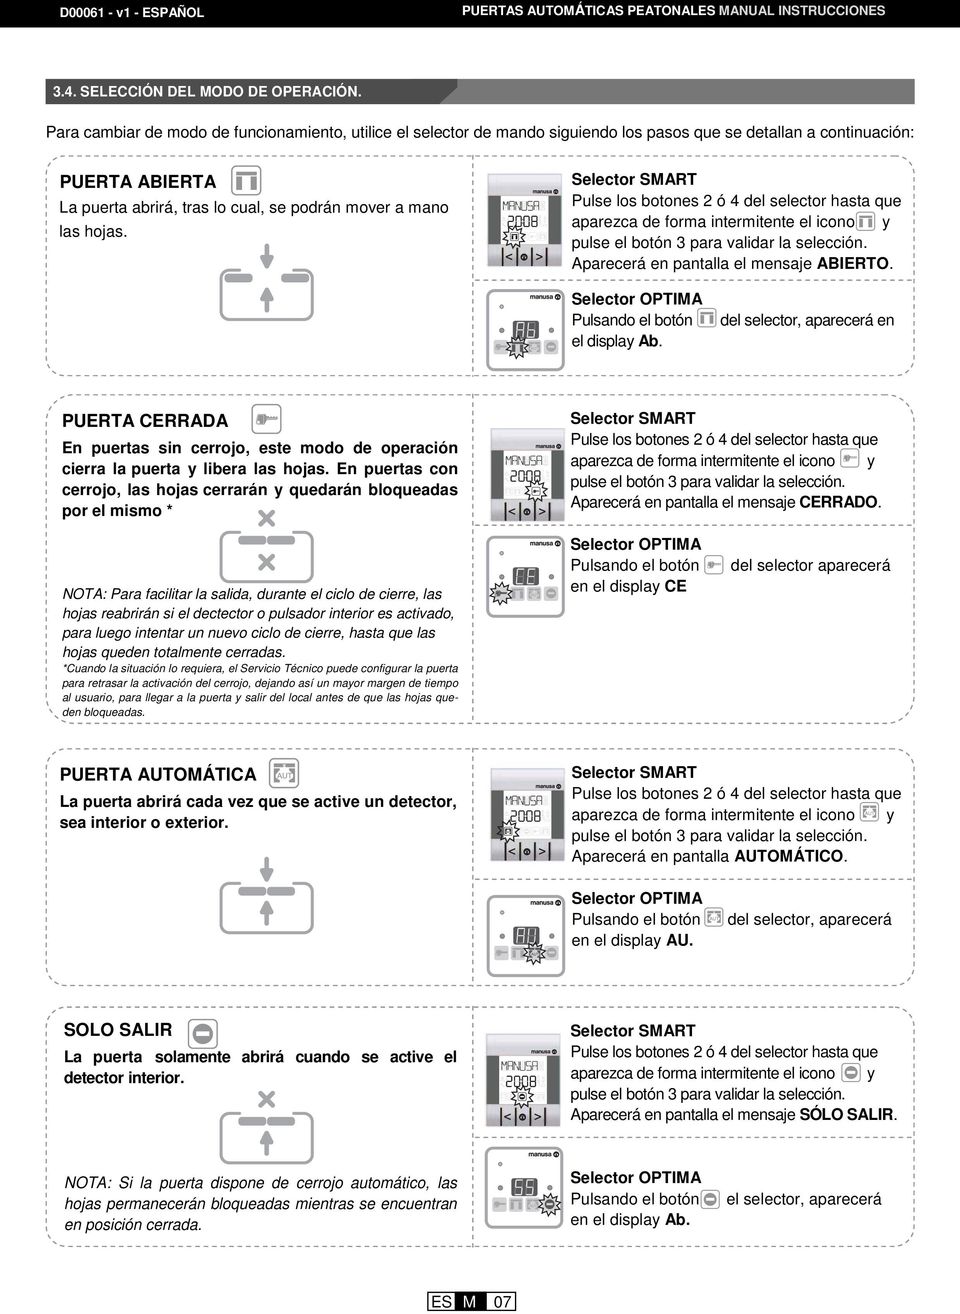 Manual De Instrucciones Puertas Automaticas Peatonales Pdf Free Download